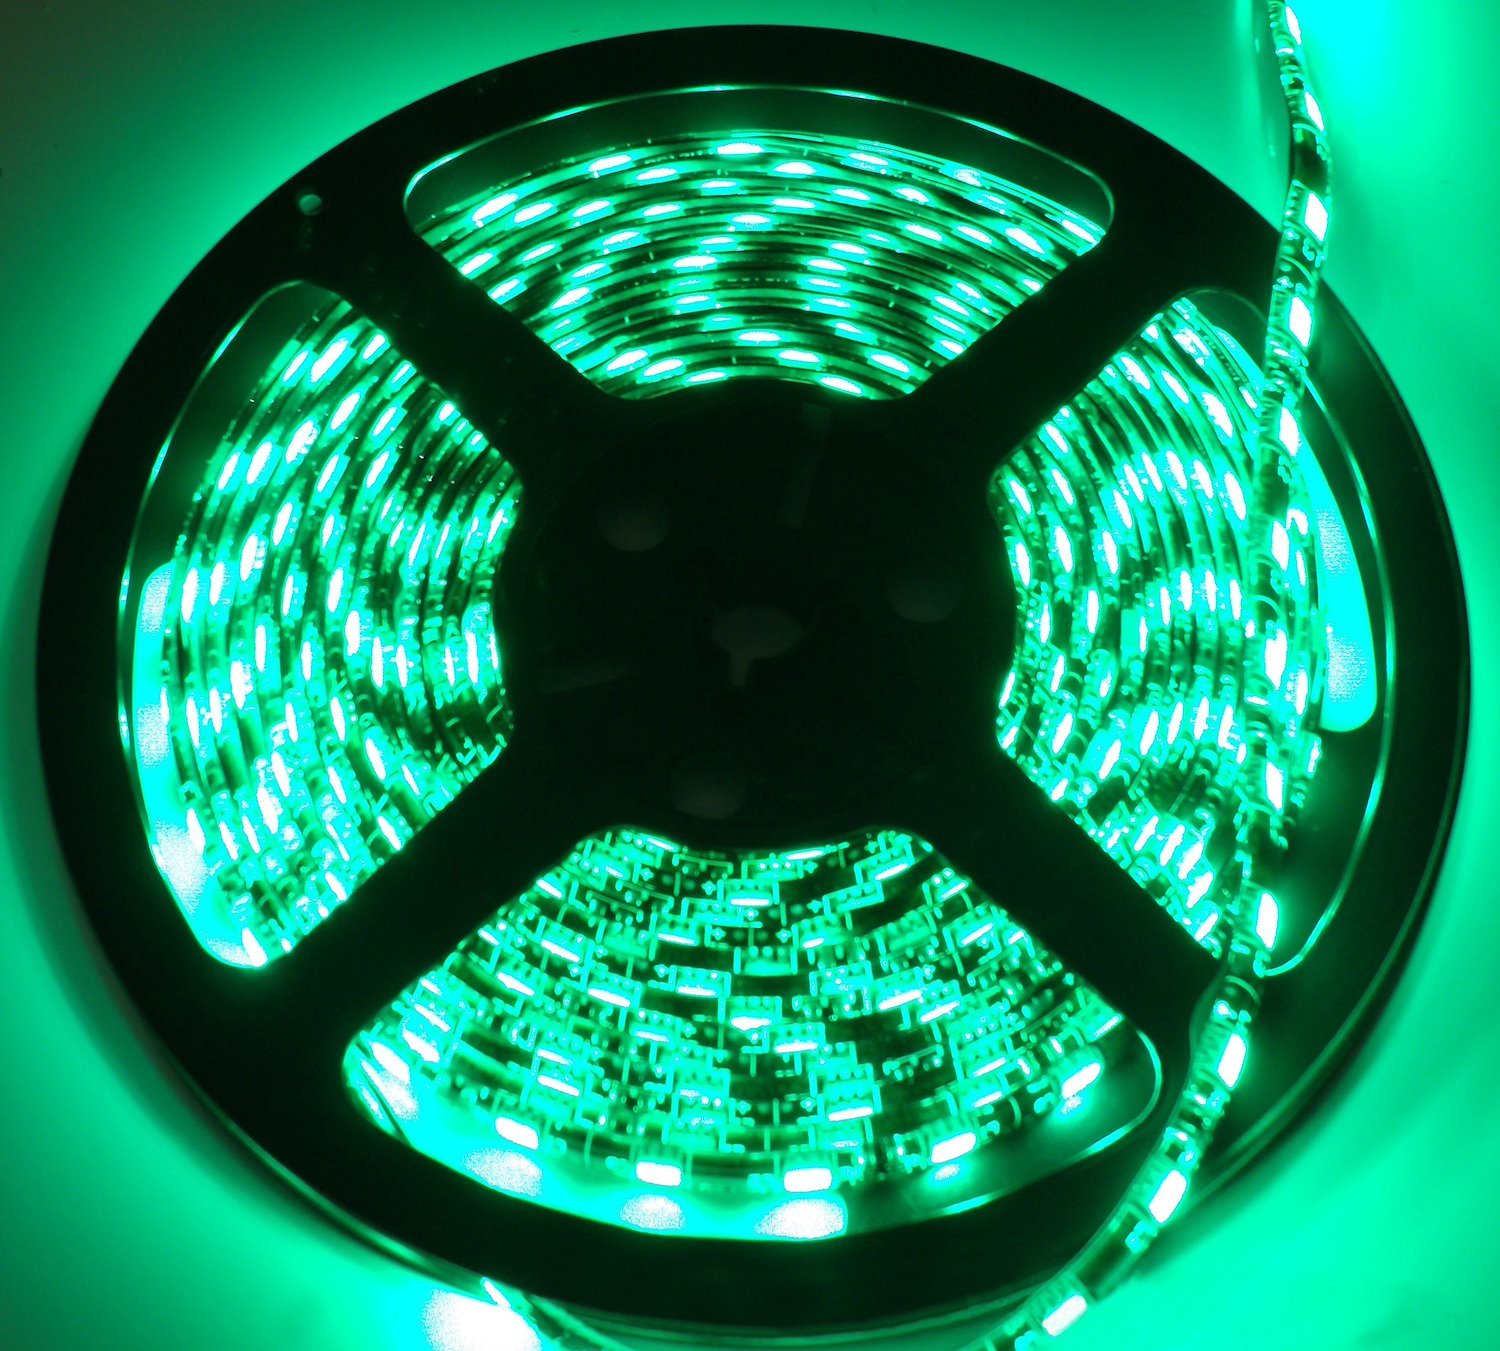 RS-5050-5MG 16 ft. 5050 LED Strip, Green, Tape Strip Reel Custom Lighting System